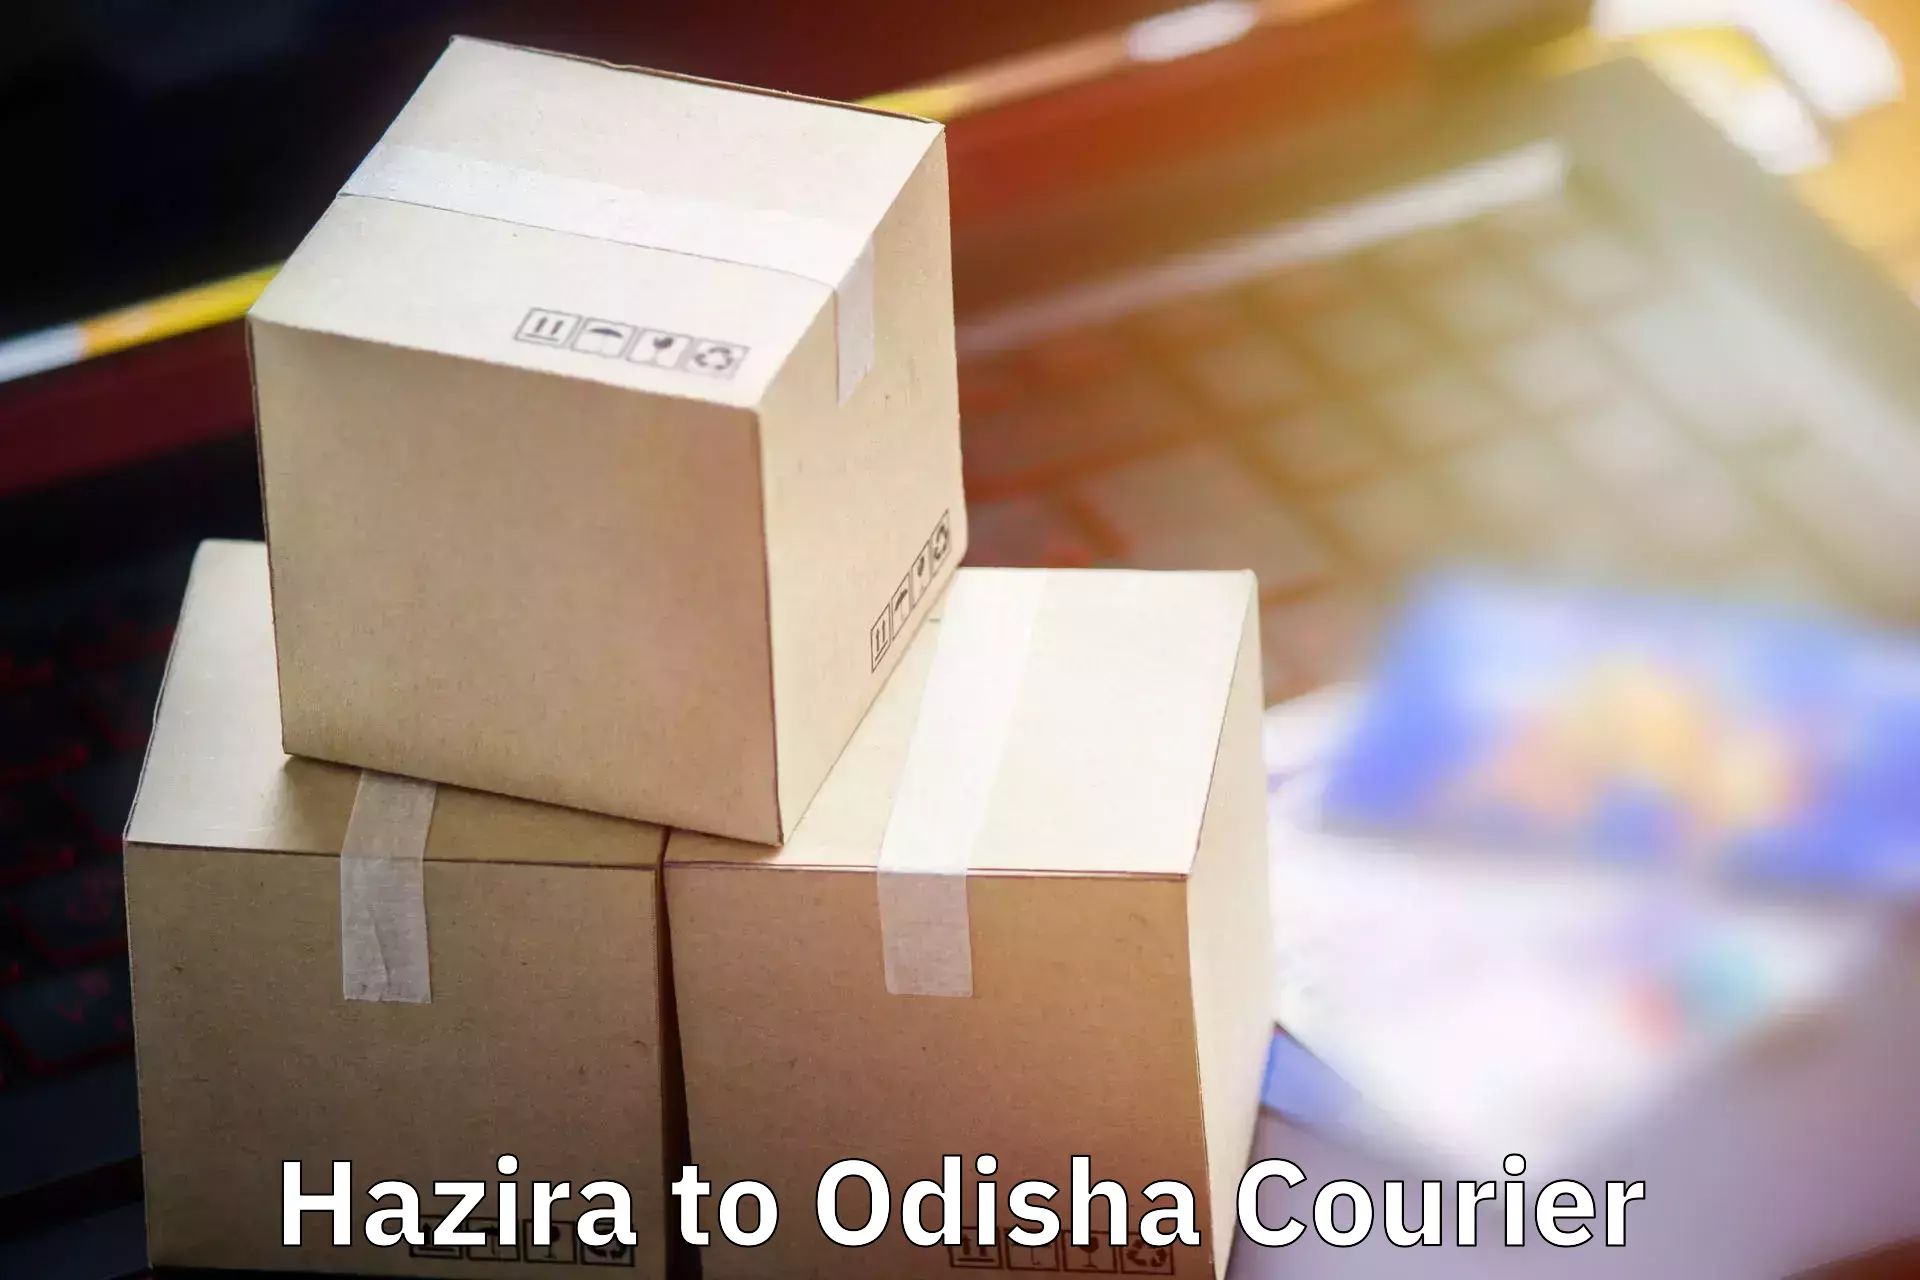 Baggage transport network Hazira to Bhadrak